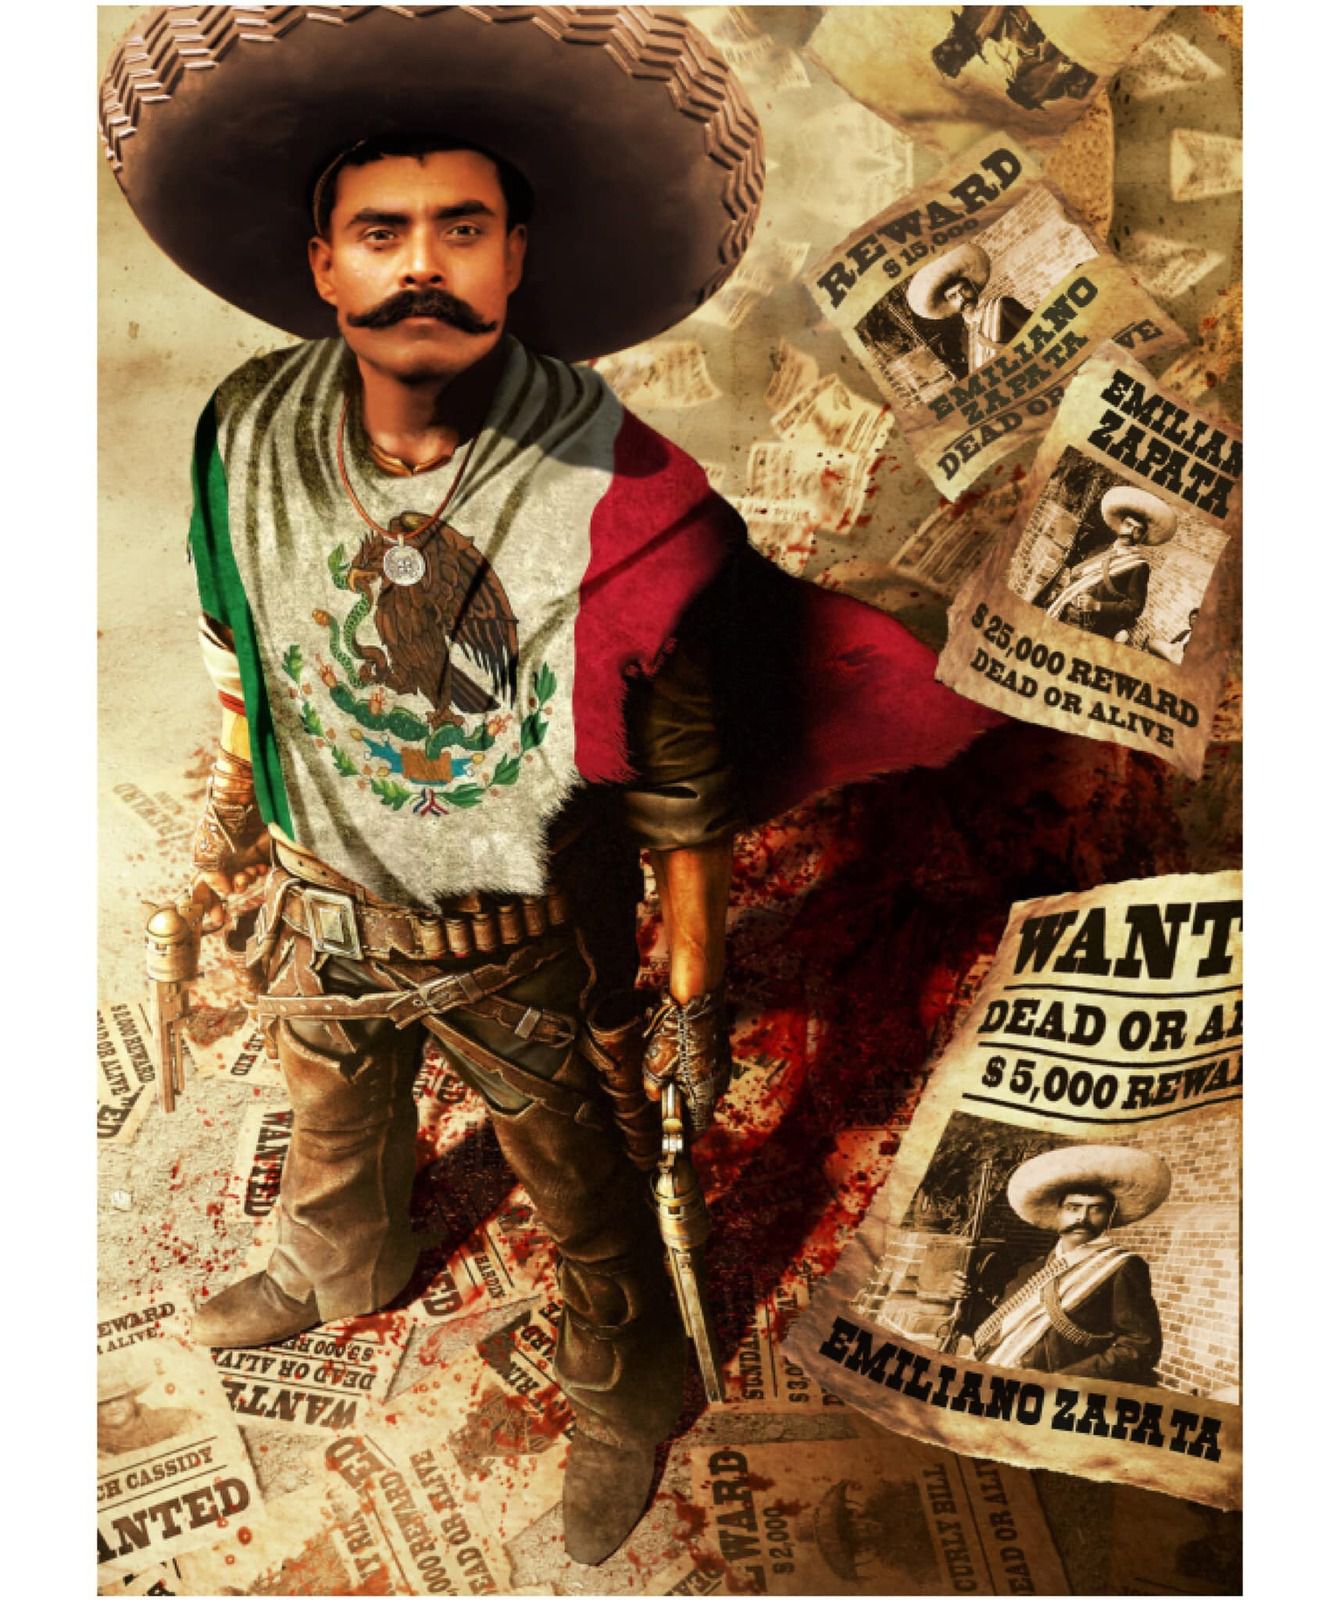 Pourquoi Emiliano Zapata a été si important dans l'histoire du Mexique (et le révolutionnaire le plus aimé) ? - Last Night in Orient